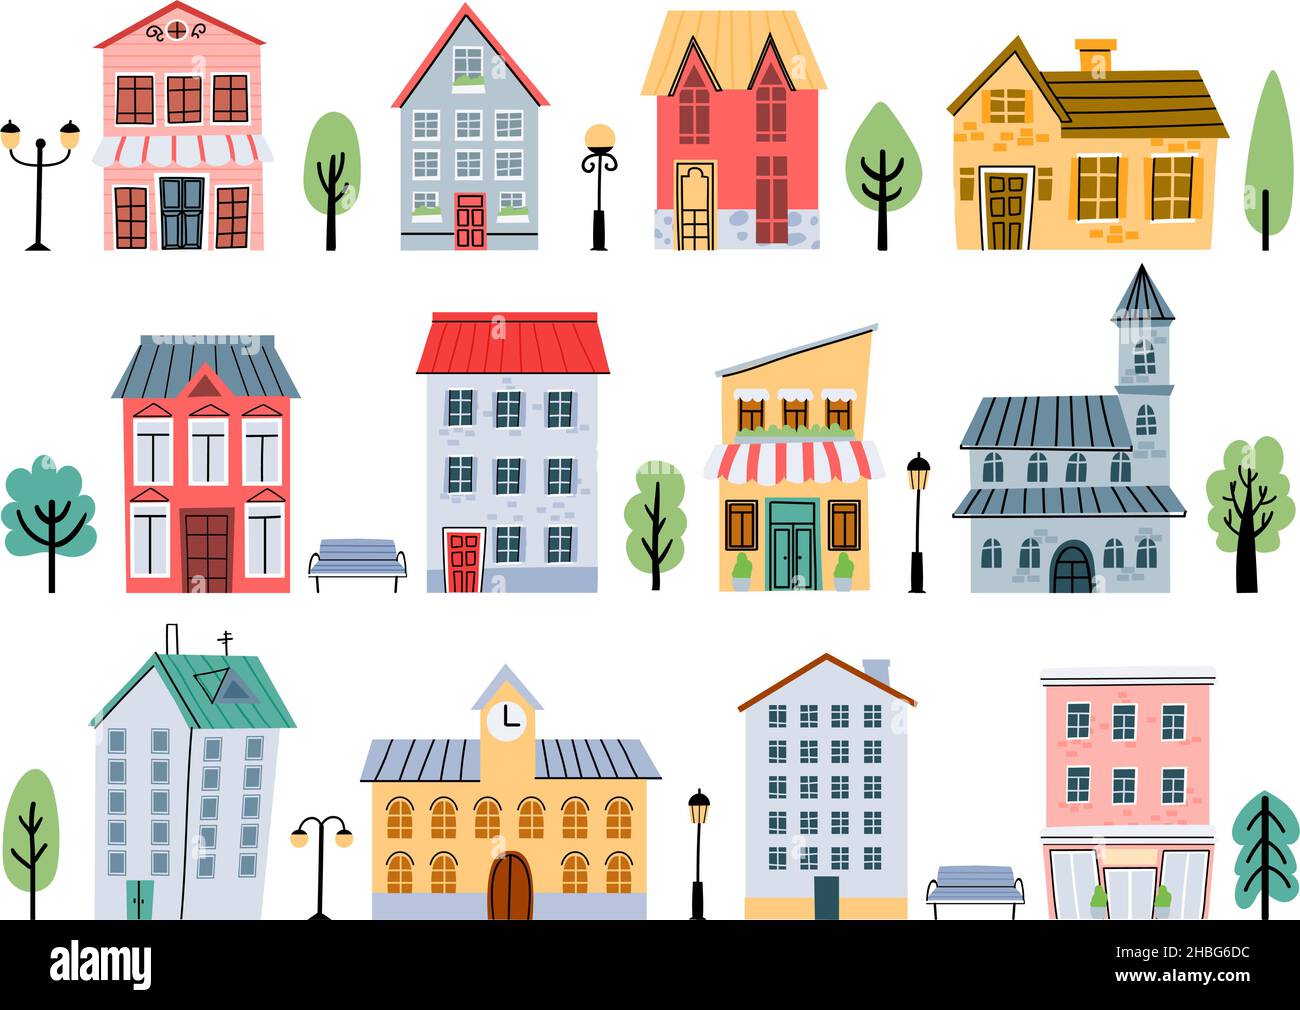 Cartoon Town Street edifici, case, negozi, alberi e torcia per bambini. Elementi di architettura urbana carina. Set di vettori per la casa della città infantile Illustrazione Vettoriale